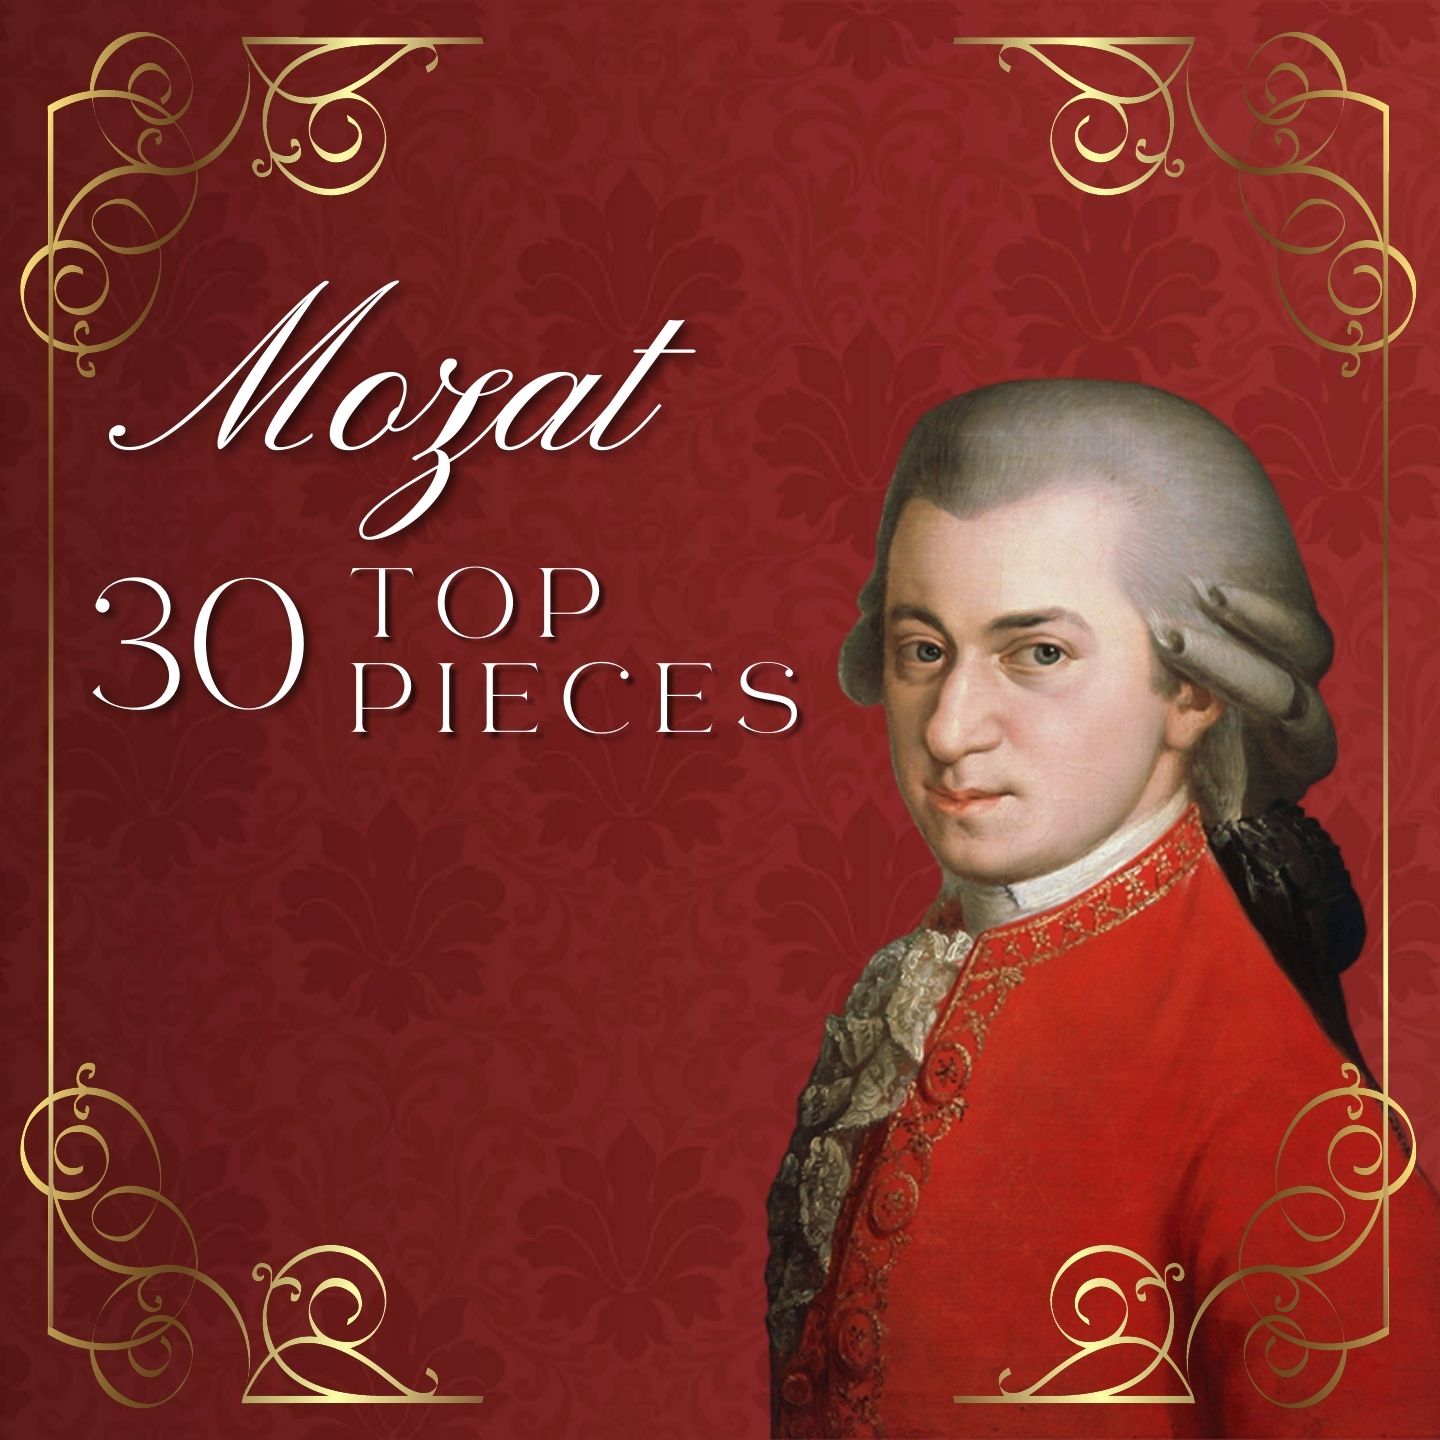 Top 30 Mozart Pieces